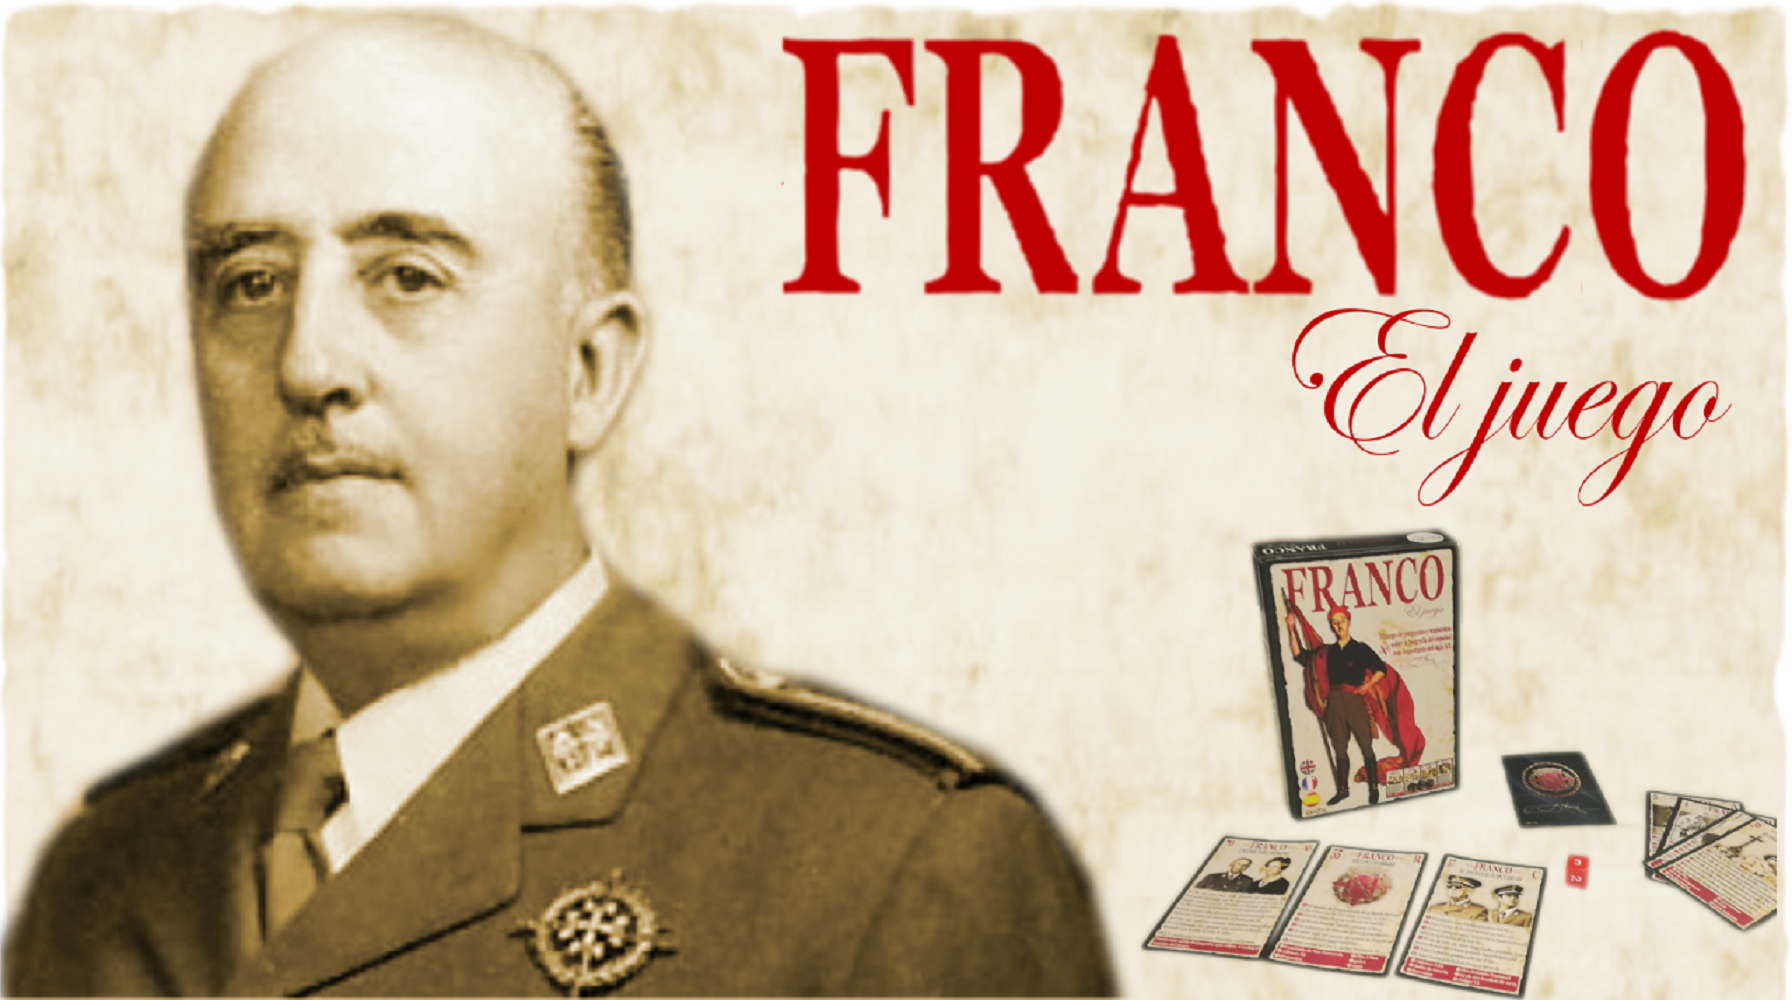 El dictador Franco ja té joc de taula (i sense fusells)